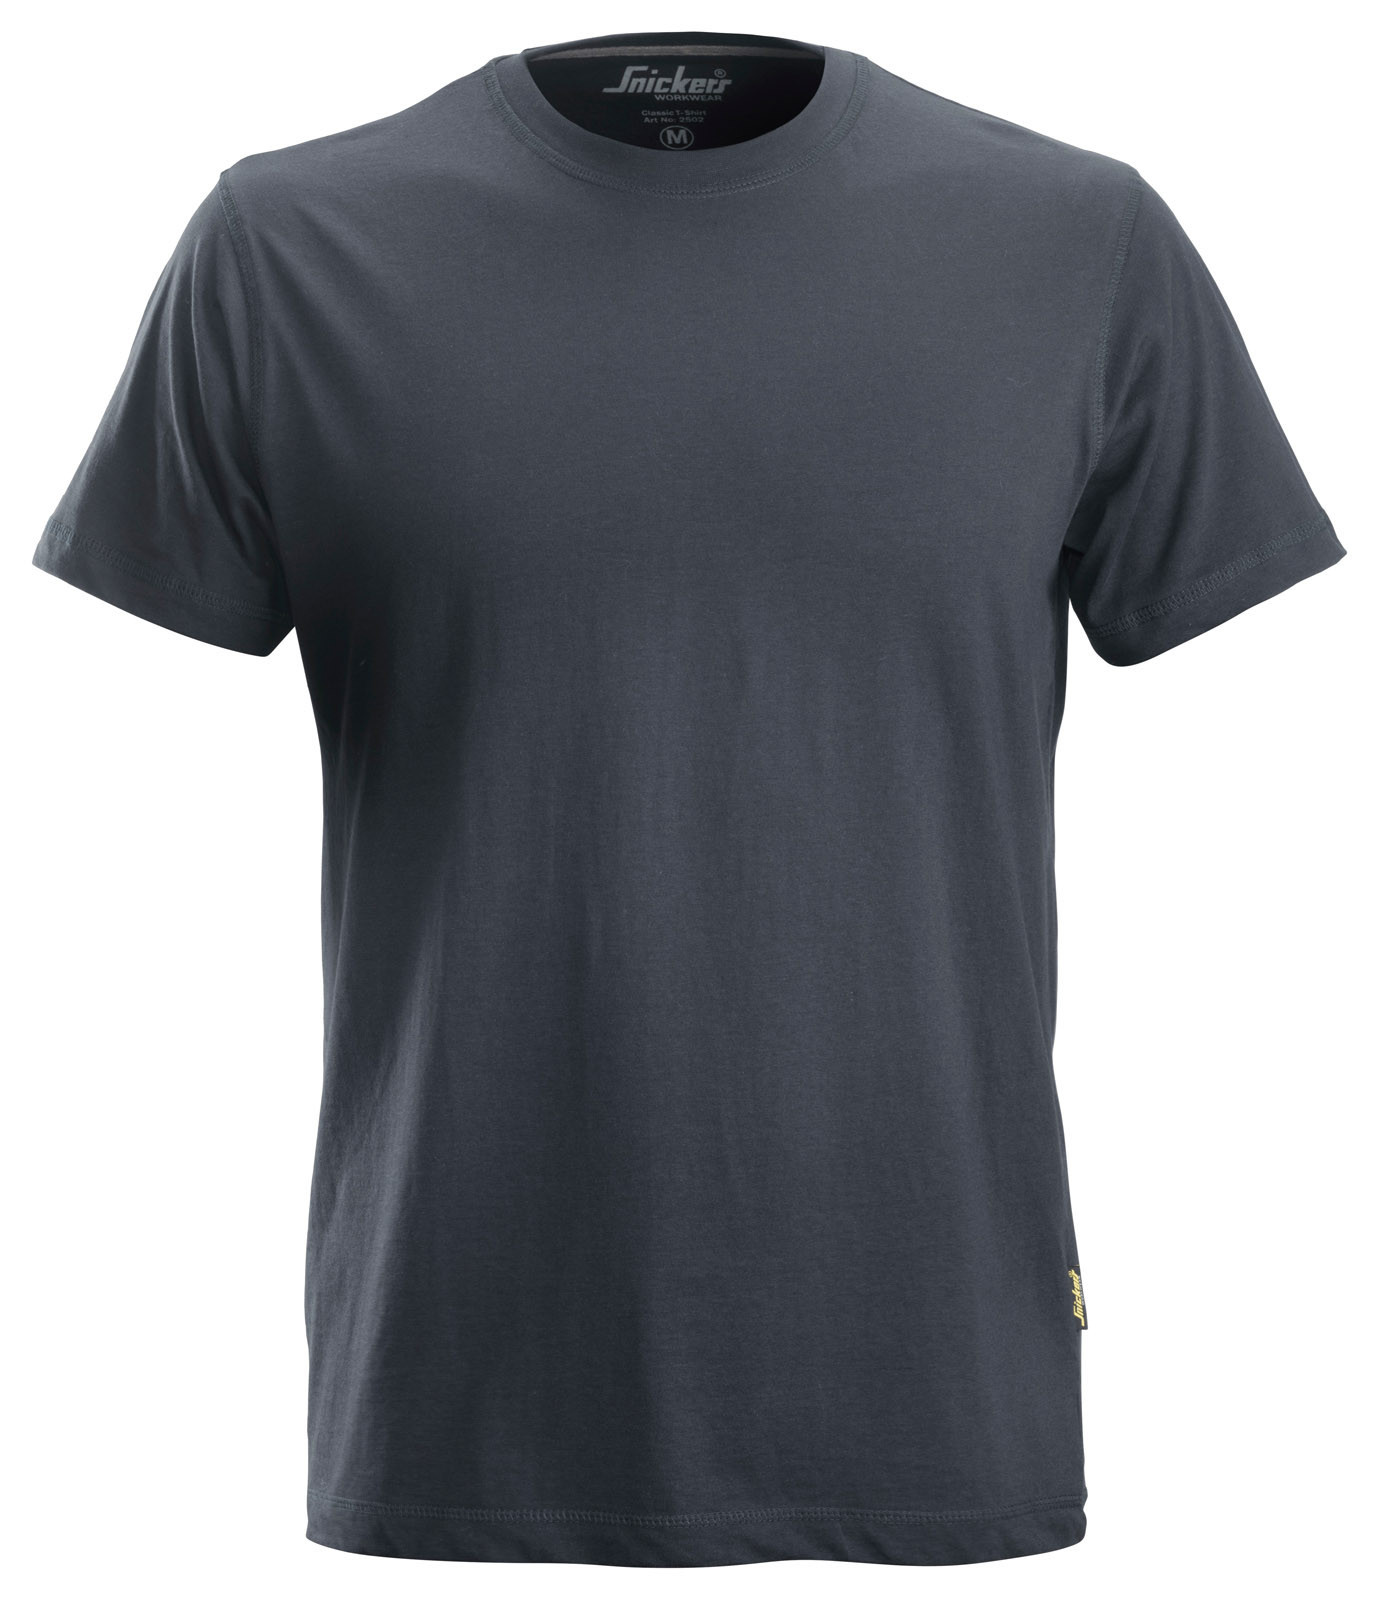 Pracovné tričko Snickers® Classic - veľkosť: L, farba: tmavo šedá